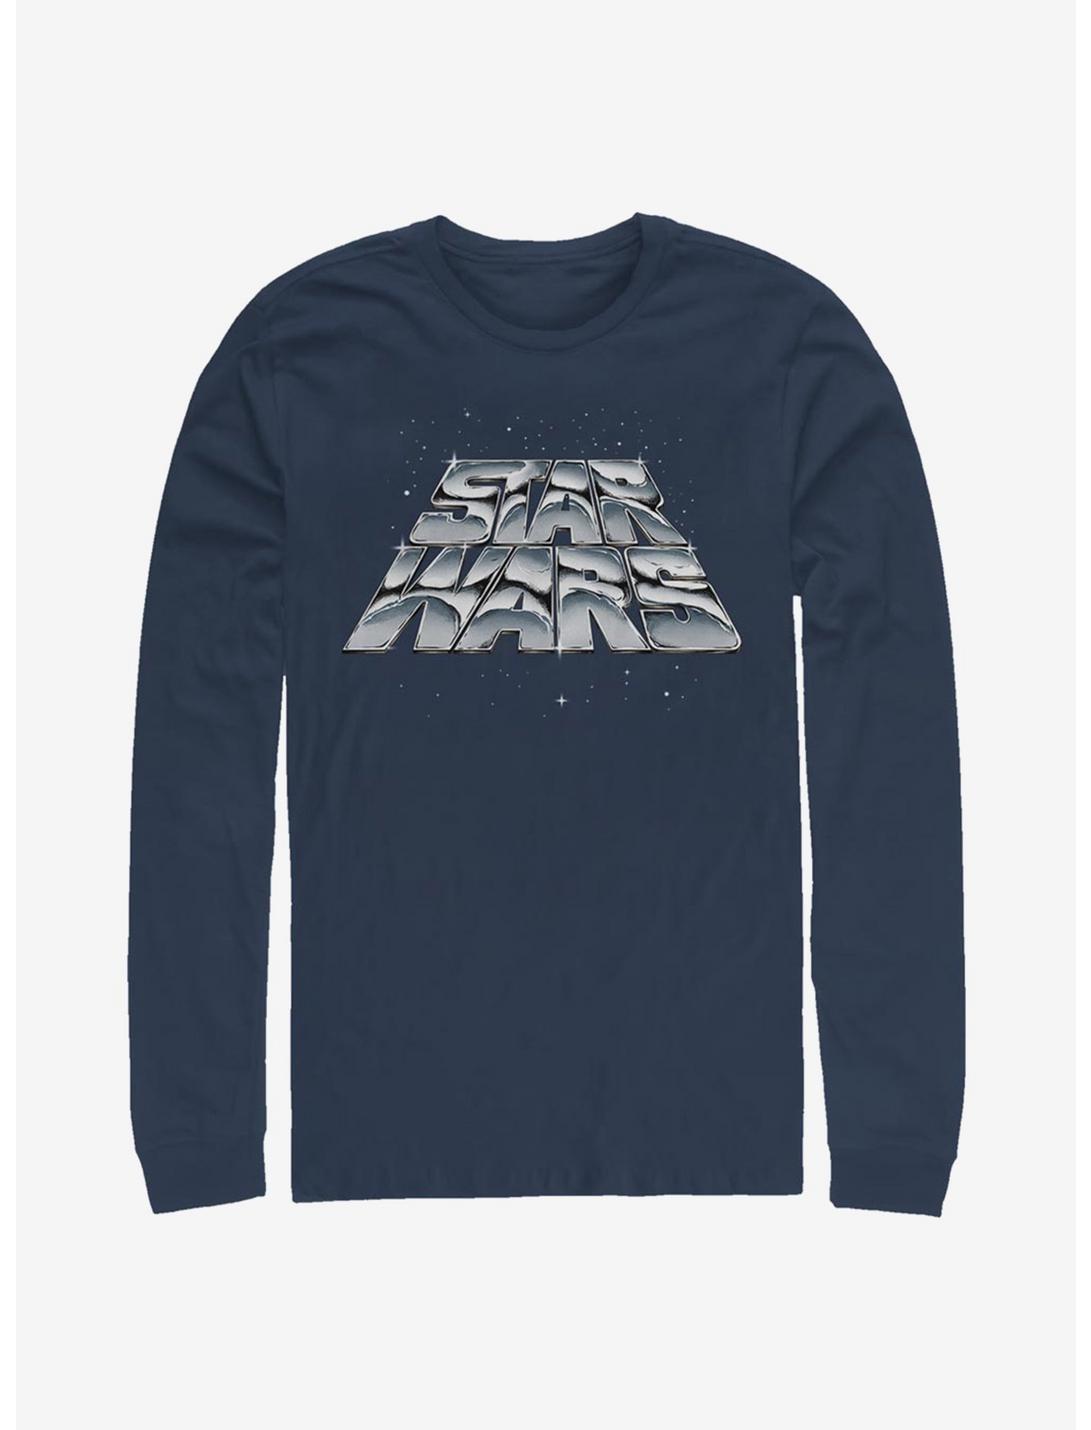 Star Wars Chrome Slant Long-Sleeve T-Shirt, NAVY, hi-res